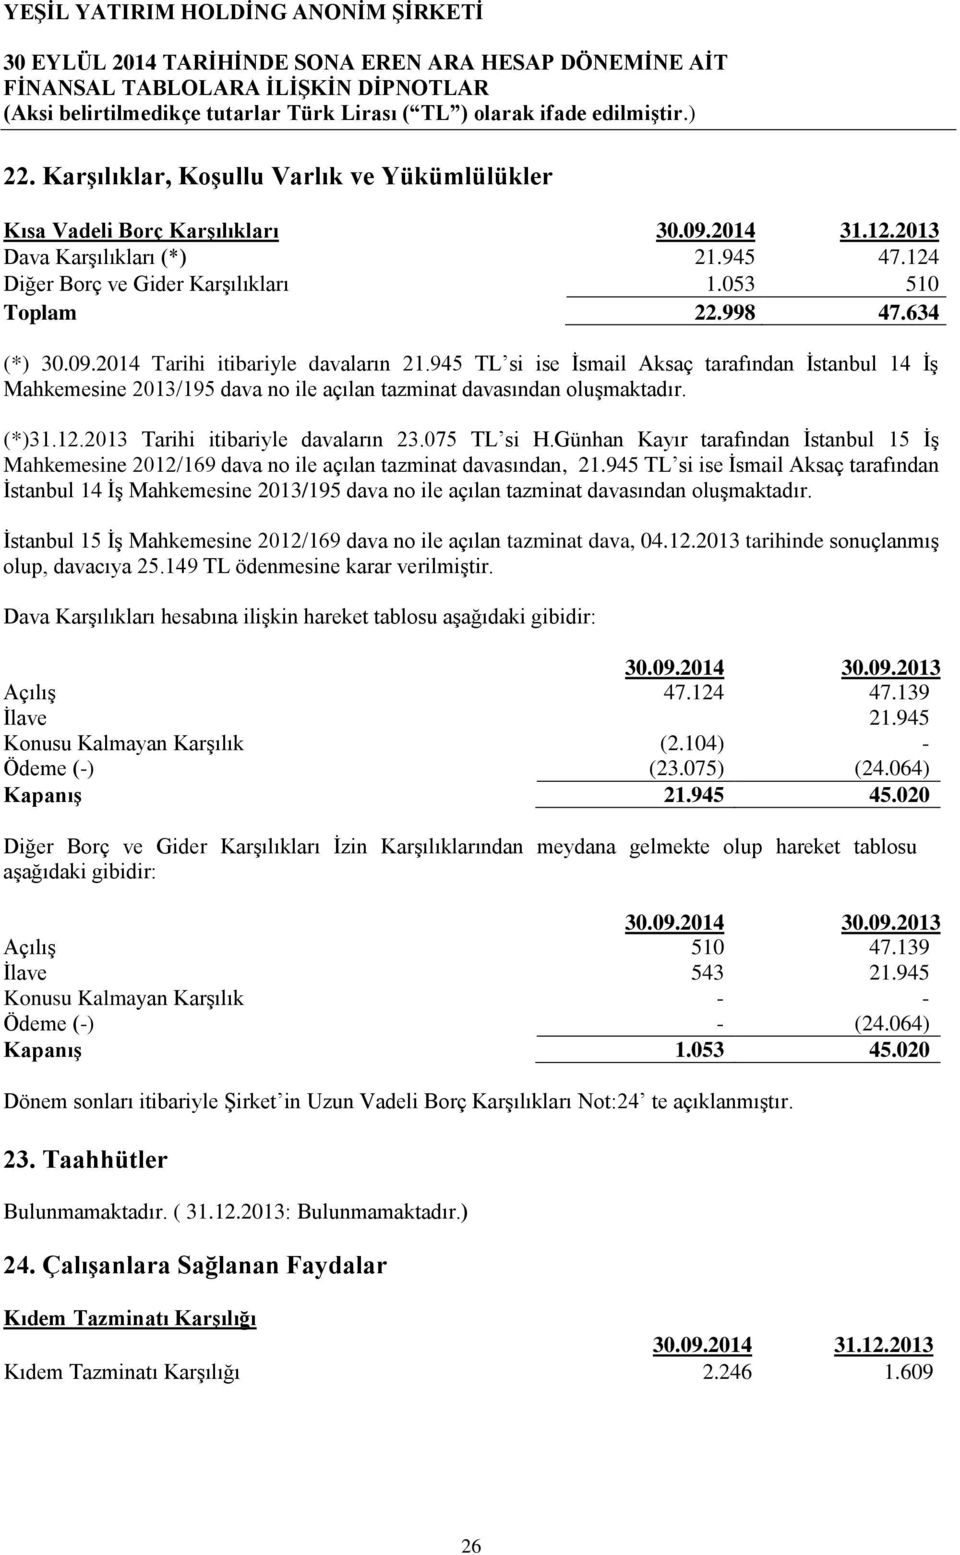 2013 Tarihi itibariyle davaların 23.075 TL si H.Günhan Kayır tarafından İstanbul 15 İş Mahkemesine 2012/169 dava no ile açılan tazminat davasından, 21.